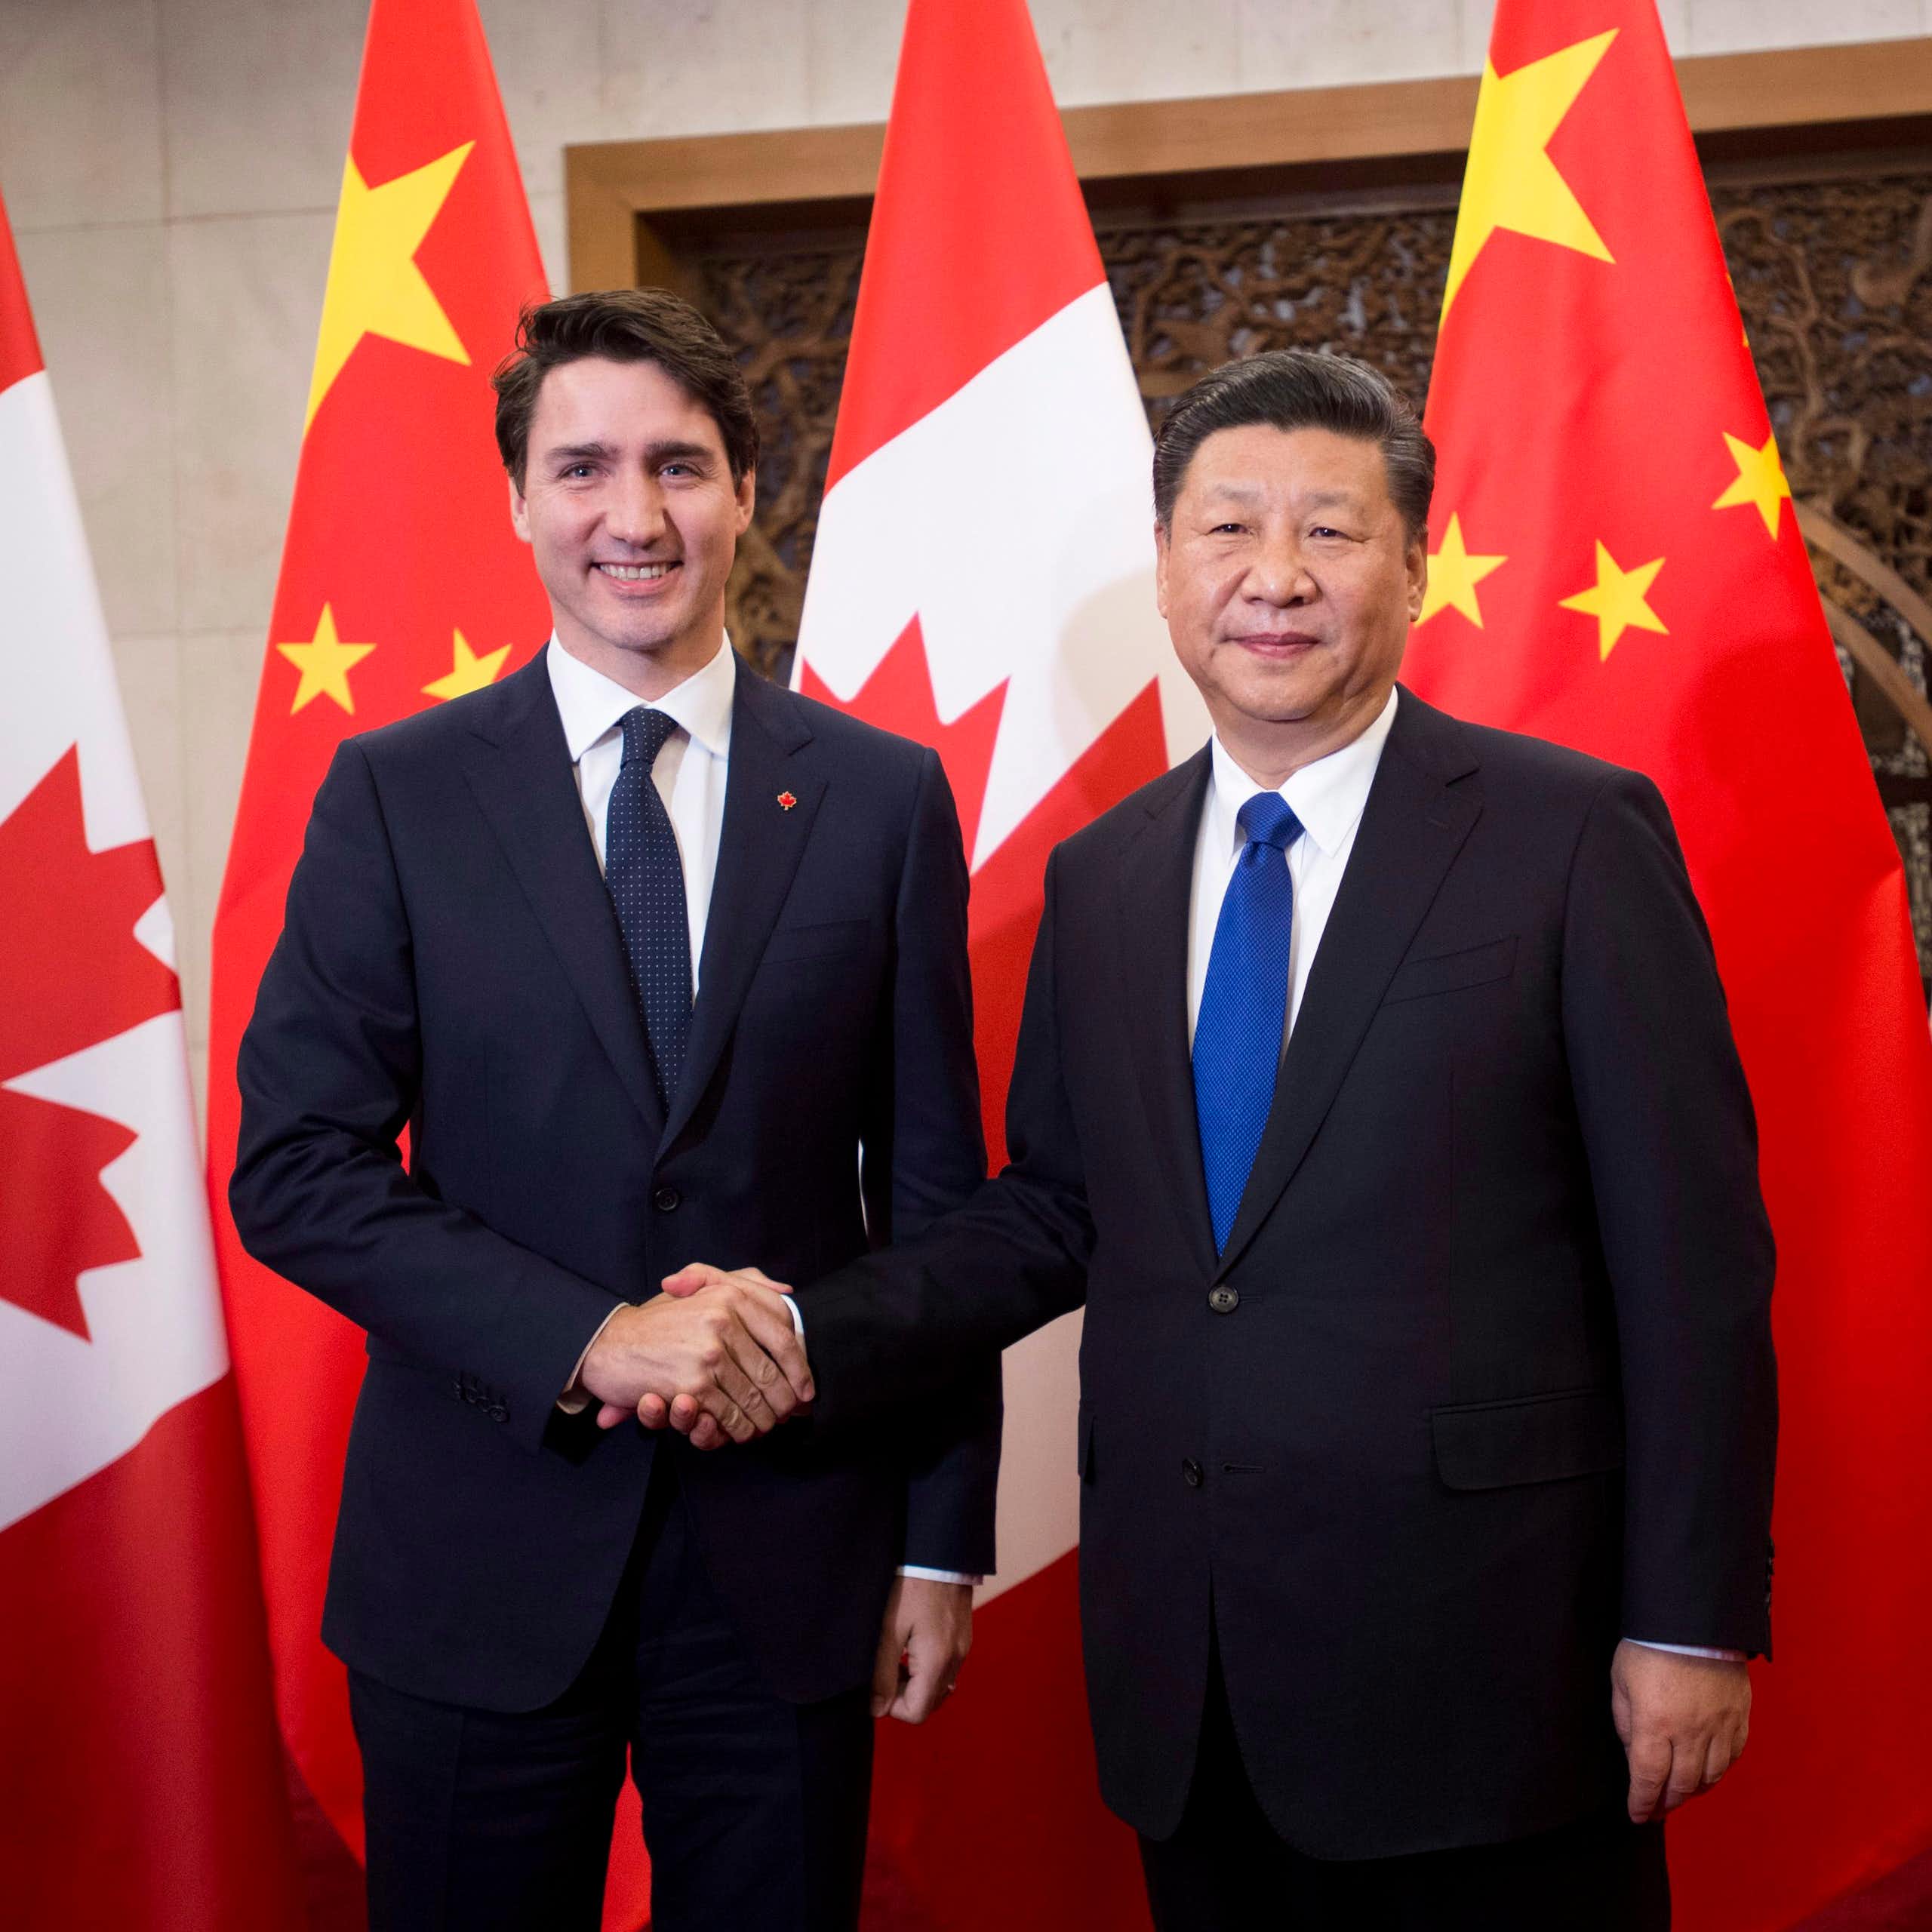 Justin Trudeau serre la main de  Xi Jinping devant des drapeaux canadiens et chinois